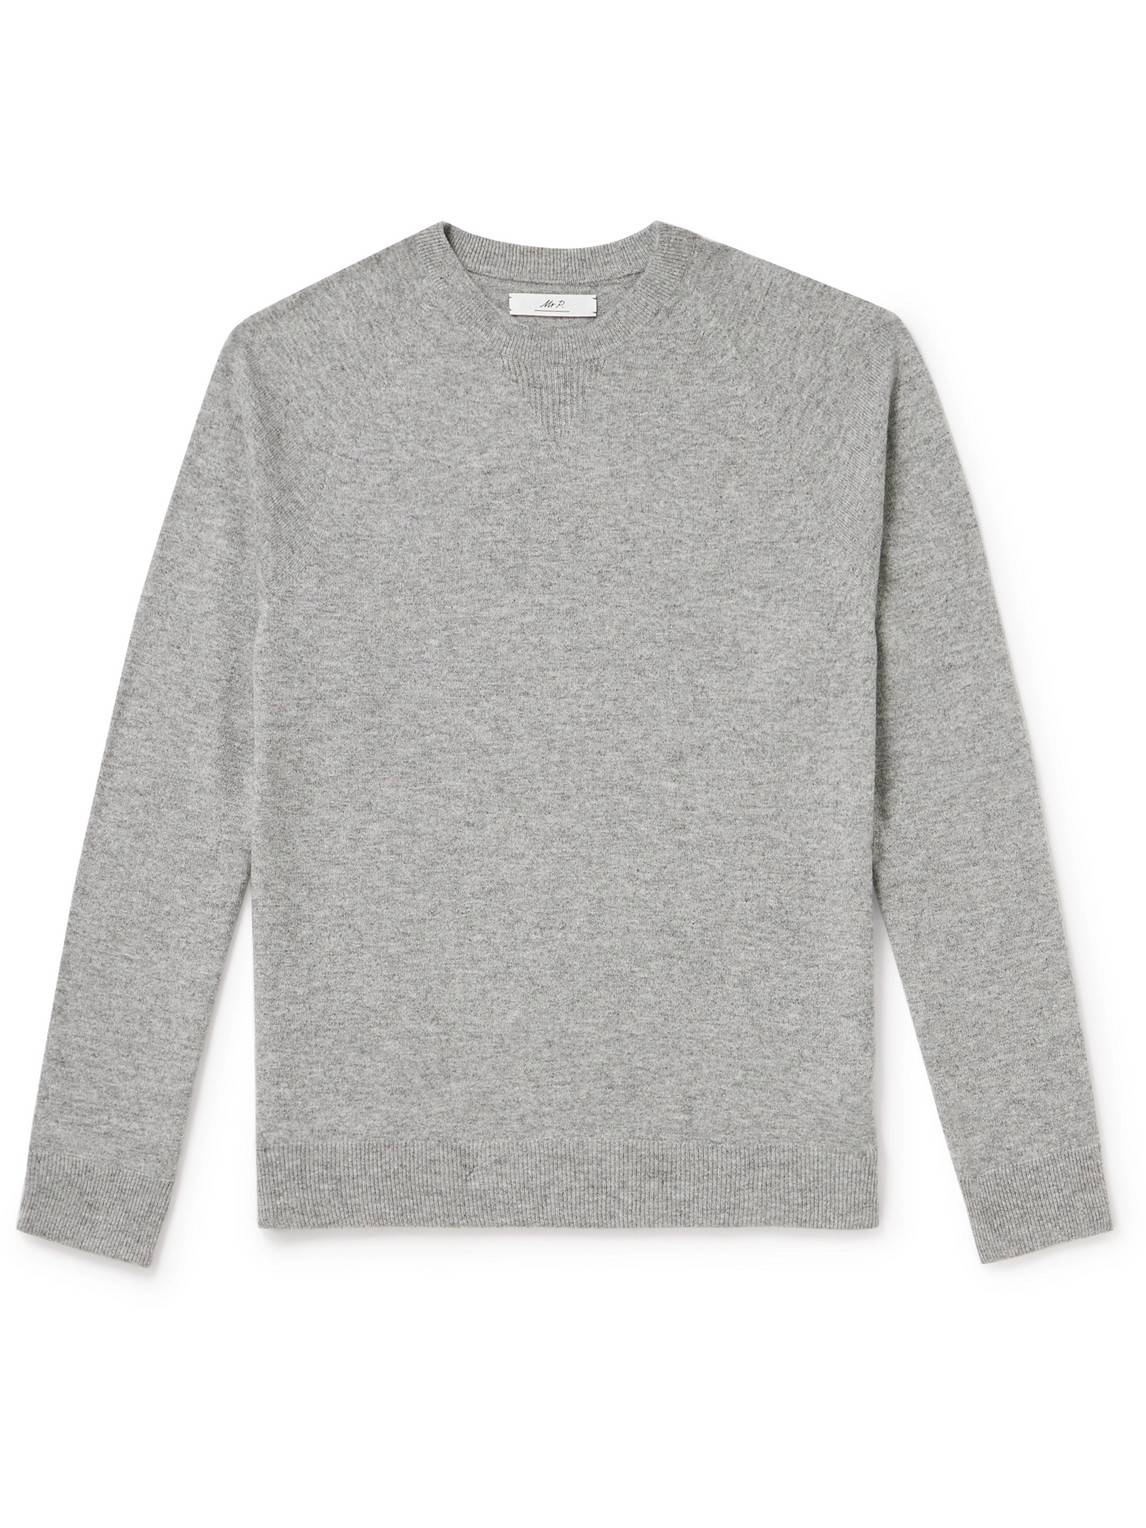 Mr P. - Wool and Cashmere-Blend Sweater - Men - Gray - XL von Mr P.